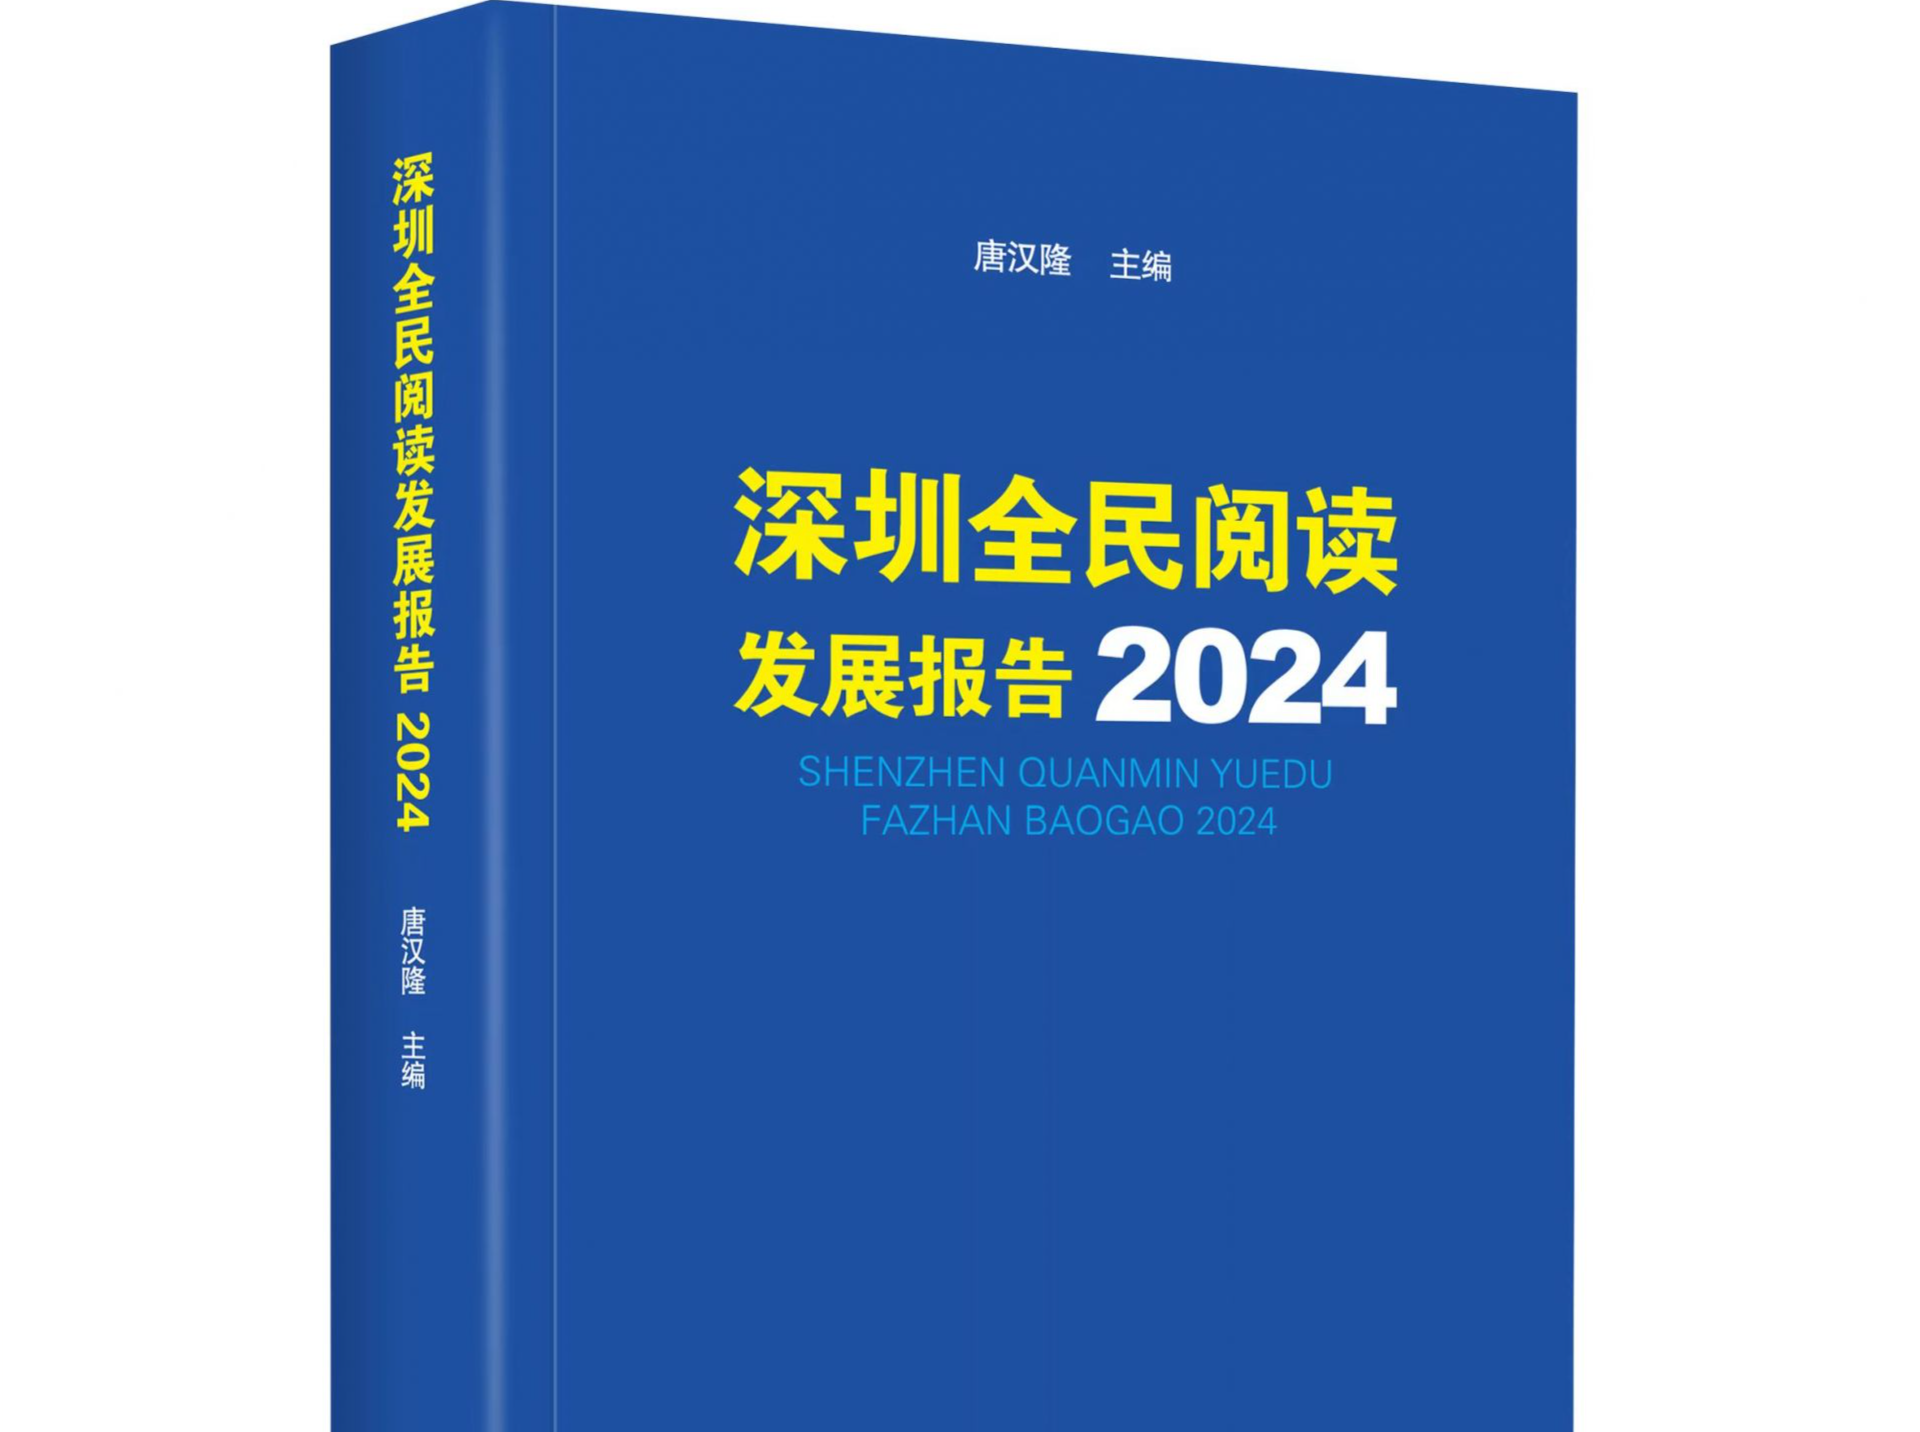 2023年深圳居民人均阅读量约15本！最新全民阅读发展报告出炉